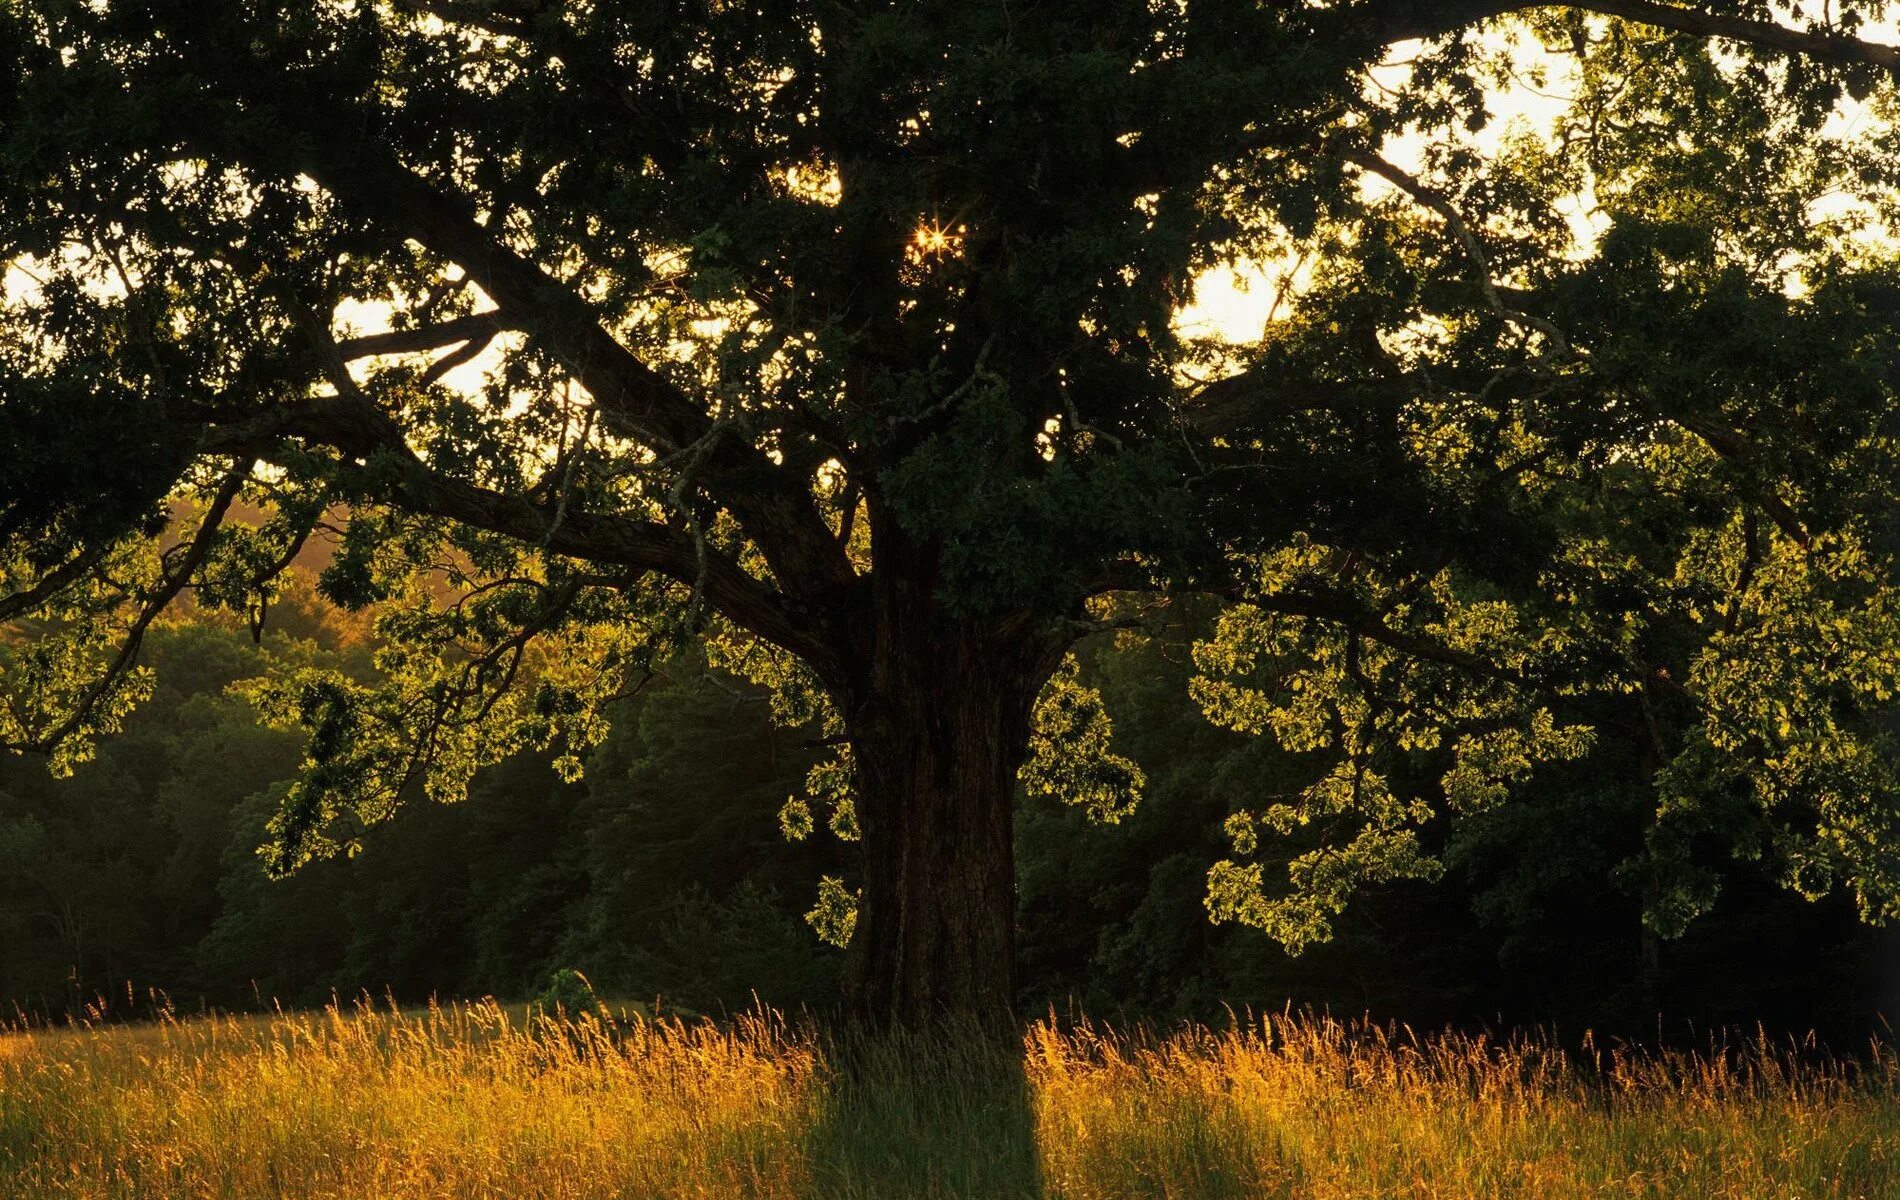 Большой дуб. Александровский лес дуб столетний. Дуб дерево. Одинокое дерево. Пейзаж с деревьями.